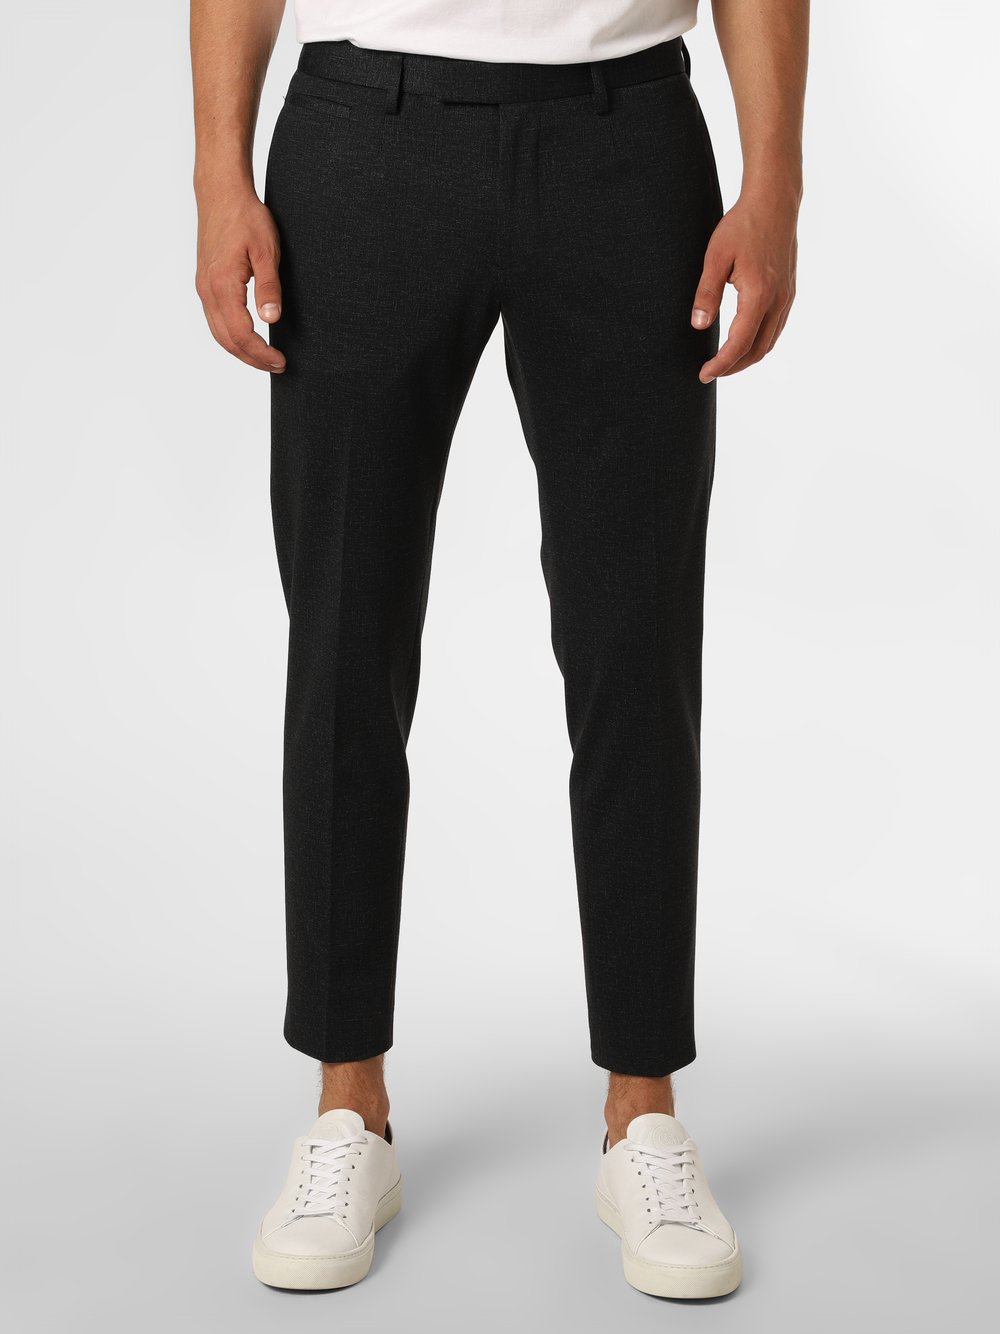 Strellson - Męskie spodnie od garnituru modułowego – Kynd2-J, czarny